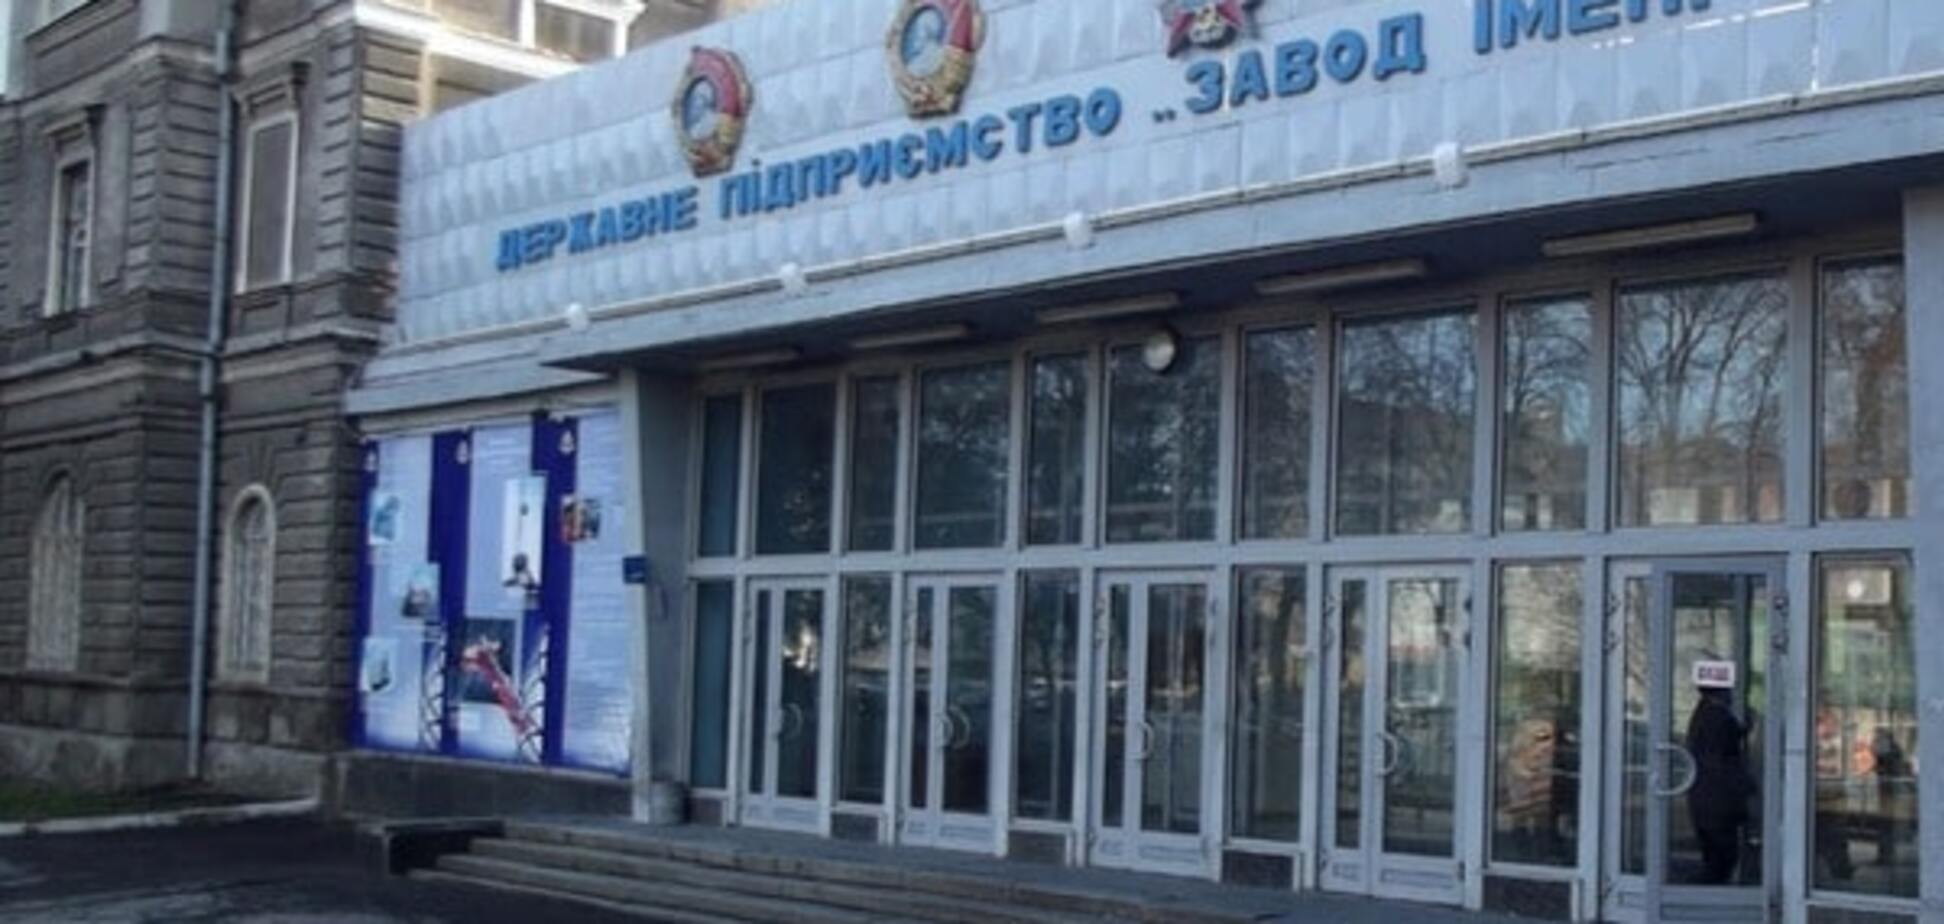 Над новими БТР працюватиме весь Харків - 'Укроборонпром'